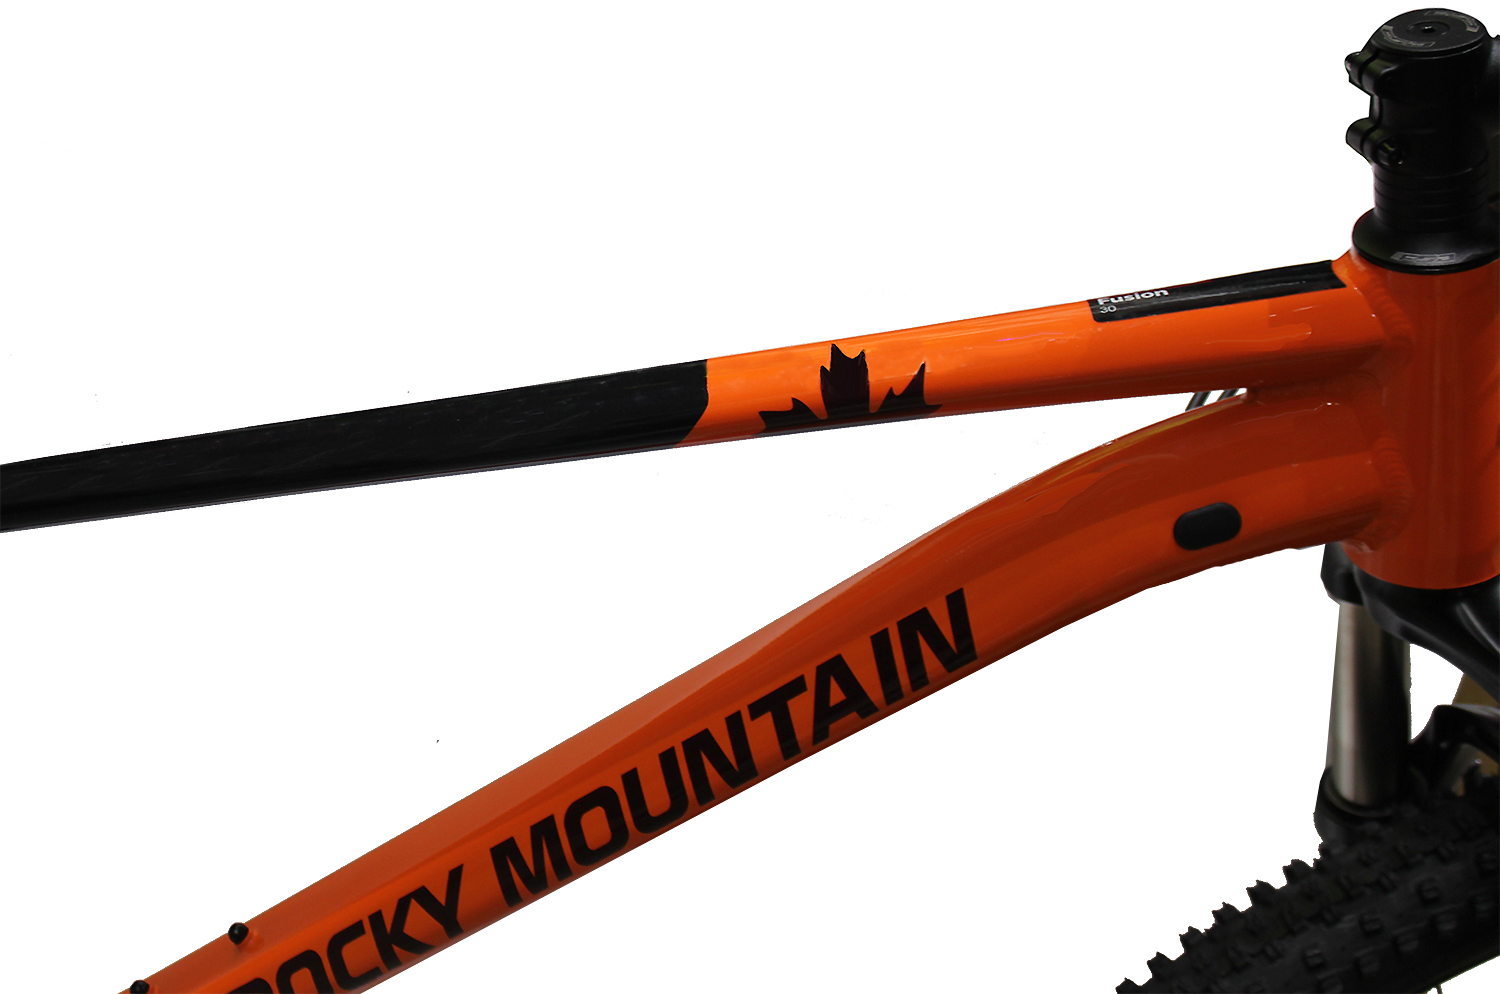 Велосипед Rocky Mountain Fusion 30 C2 2021 Black/Orange